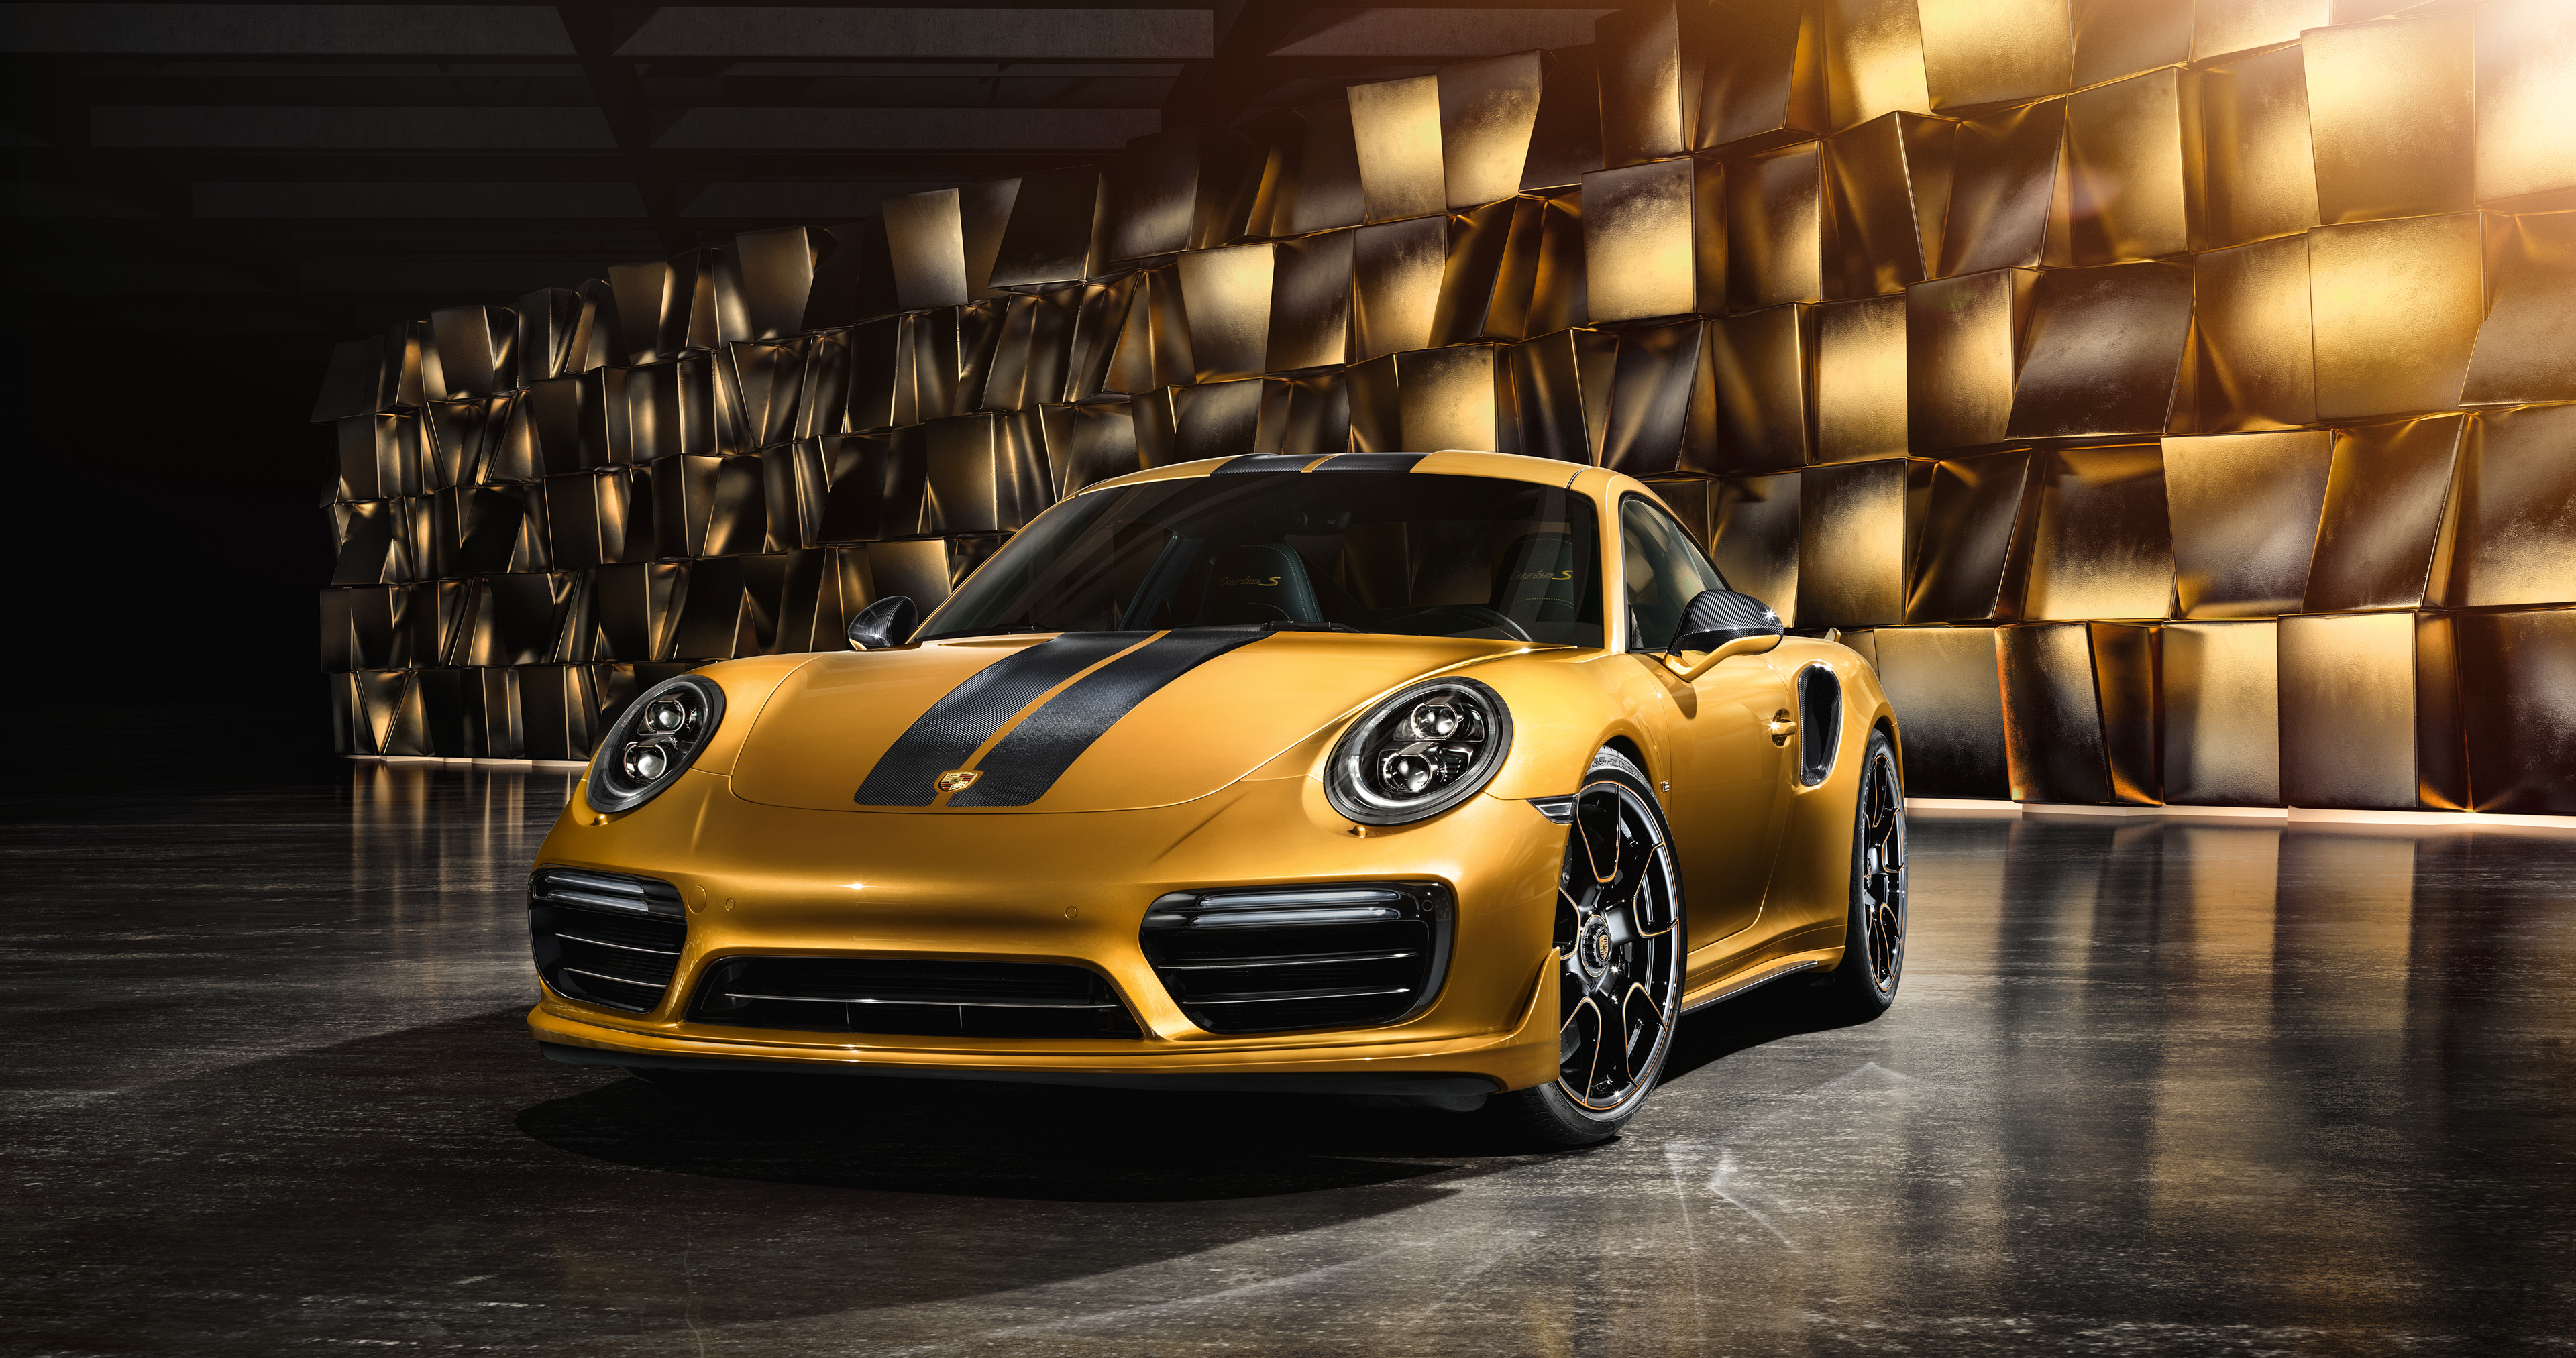 Gold Porsche 911 Turbo - HD Wallpaper 